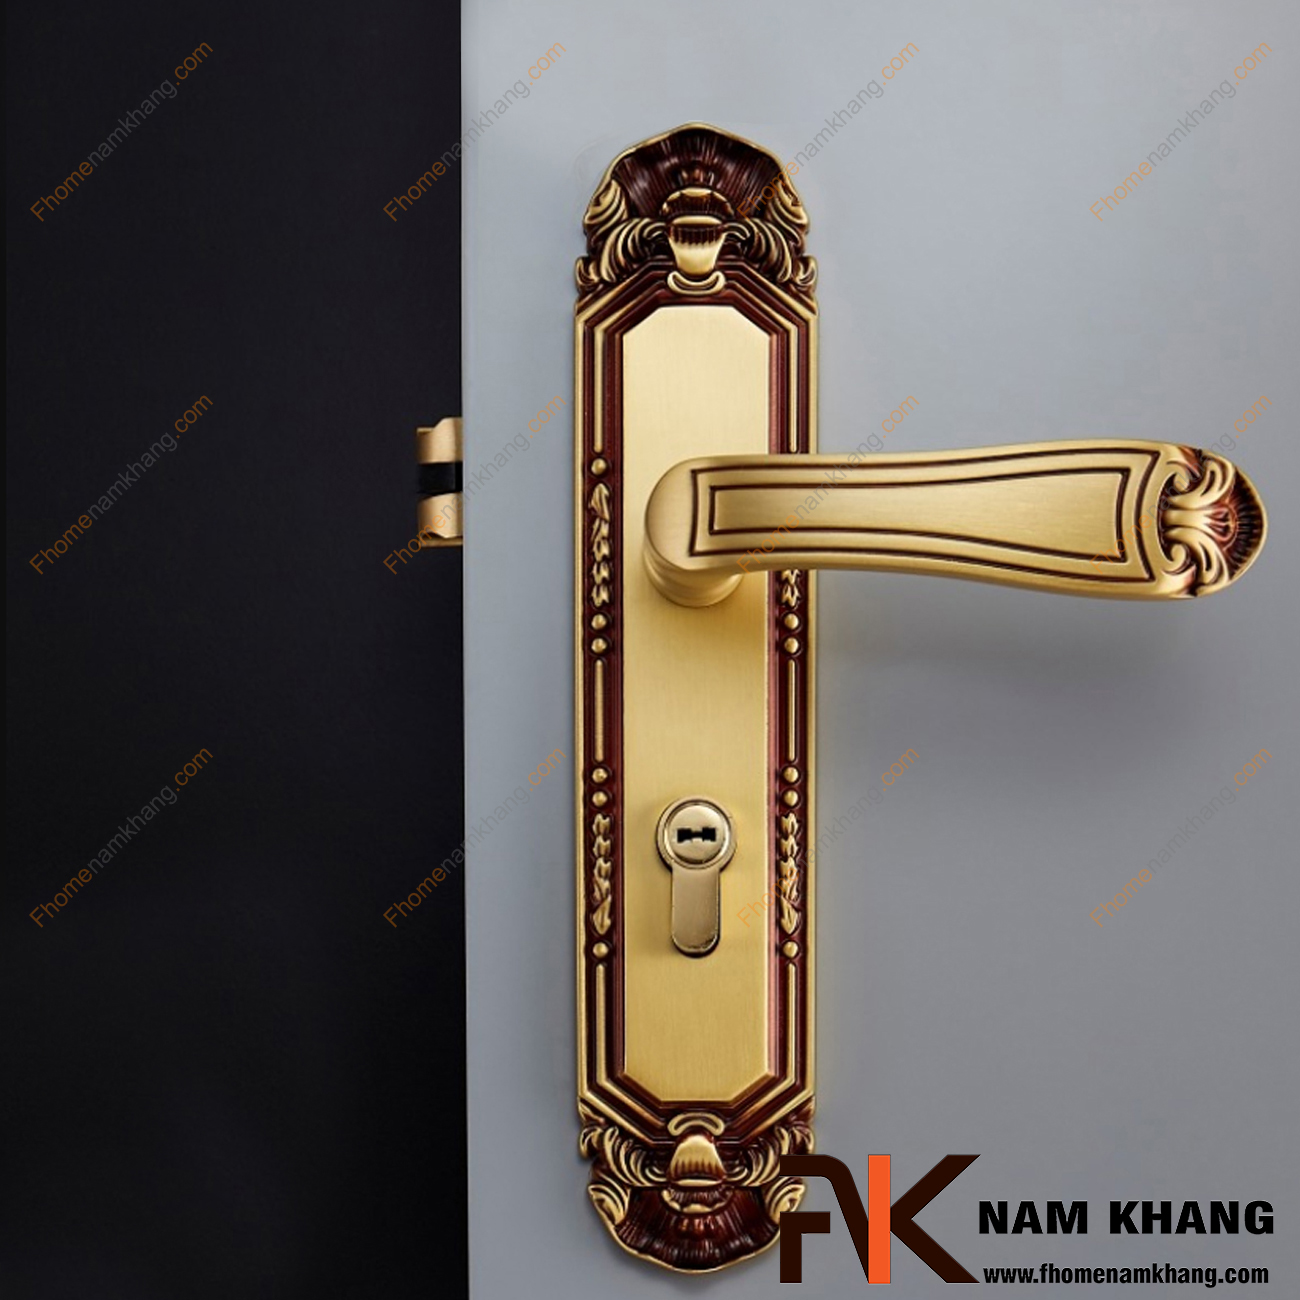 Khóa cửa chính cổ điển bằng đồng cao cấp NK348L-RC được sản xuất từ chất liệu cao cấp, có kích thước lớn chuyên dùng cho cửa chính lớn, cao cấp, cửa 2 hoặc 4 cánh,...